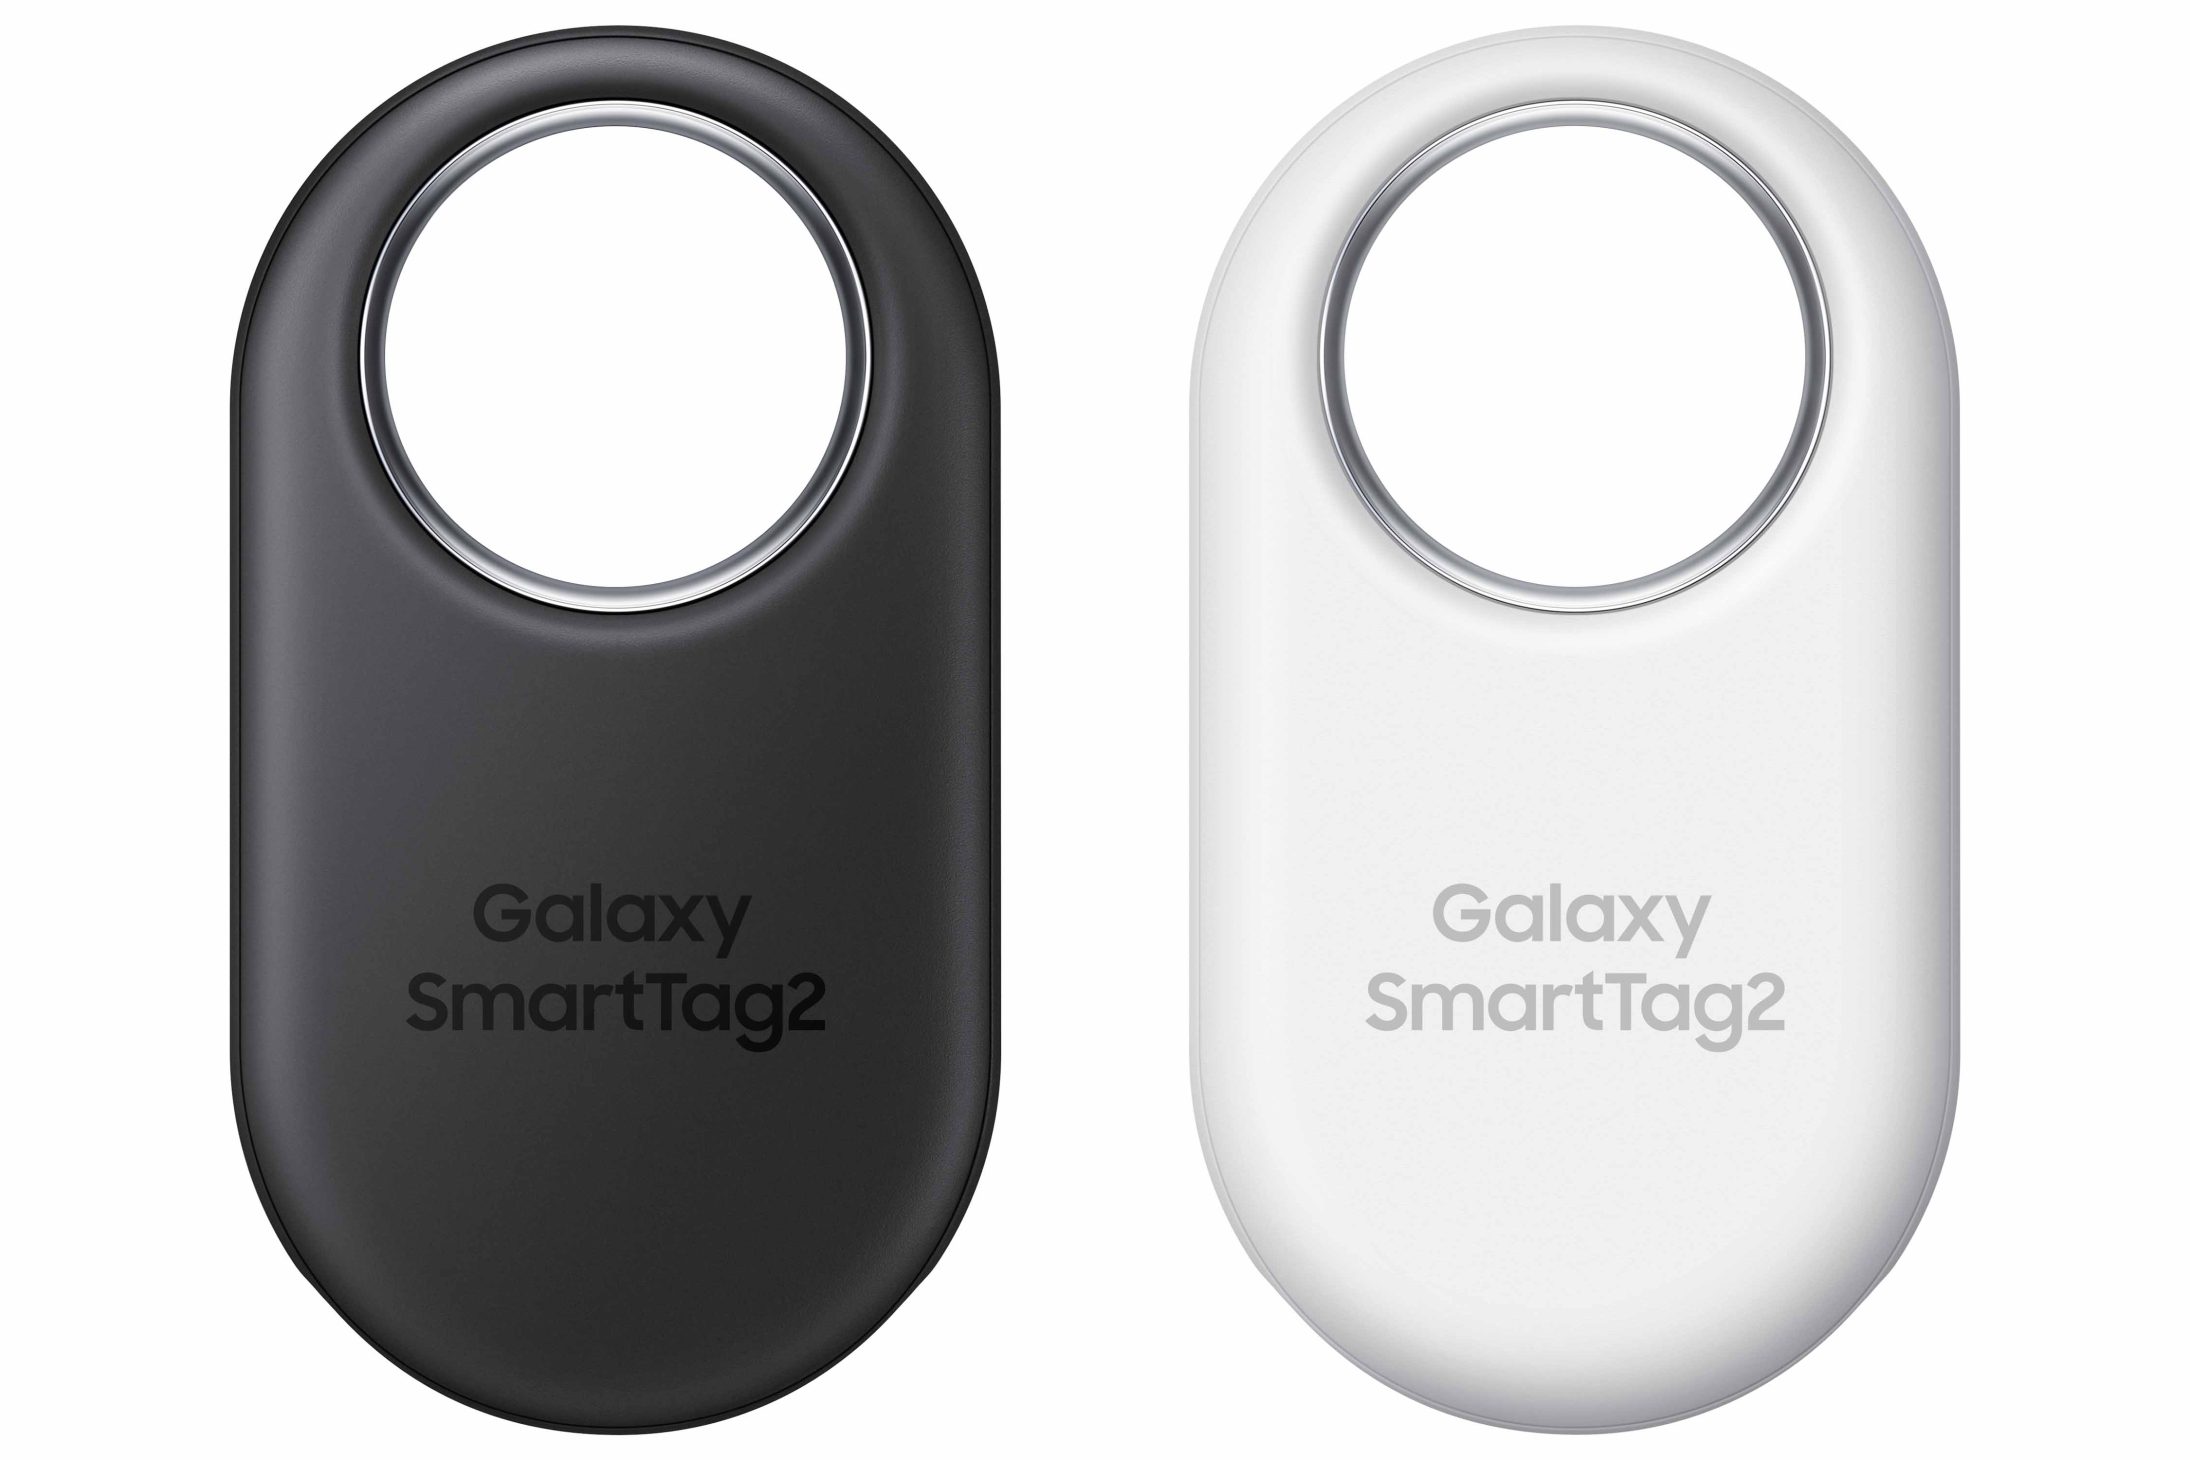 Galaxy SmartTag2 tiện hơn khi theo dấu đồ vật giá trị - 001 galaxy smarttag2 black white